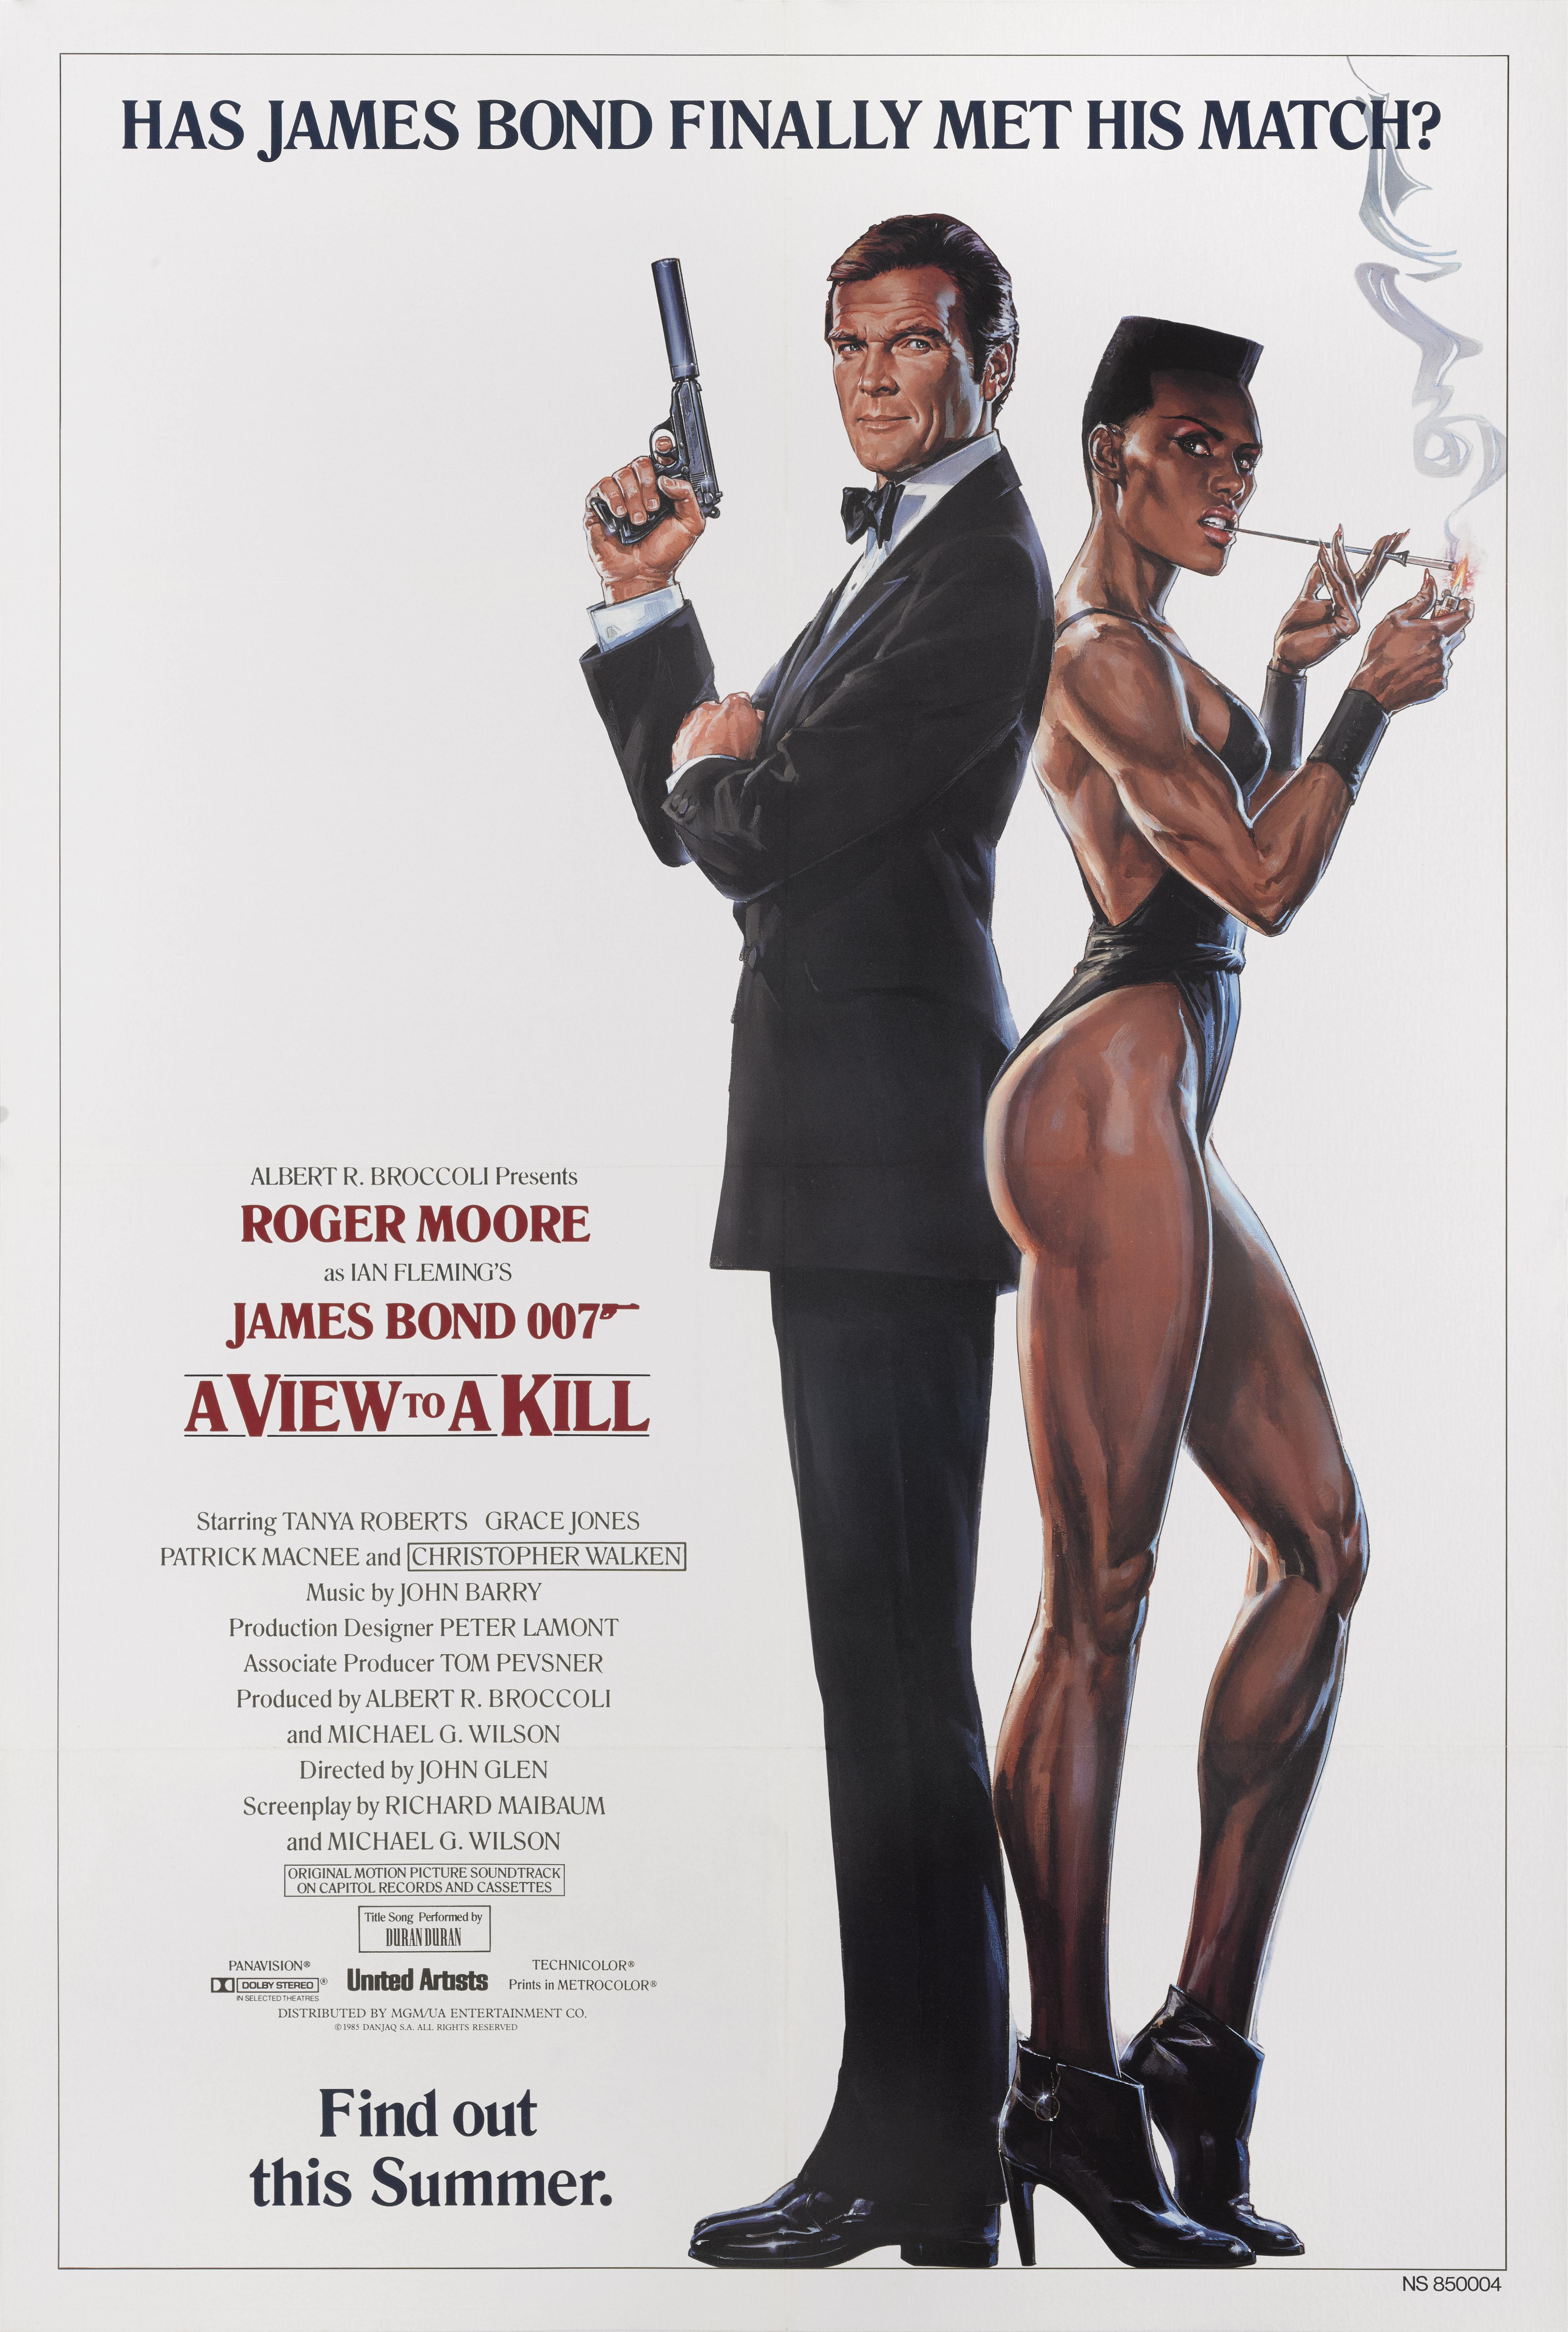 Affiche originale en blanc pour le film Bond 1985 de Roger Moore et Grace Jones.
Ce film a été réalisé par John Glen.
Cette affiche est doublée de lin de conservation. Elle sera expédiée roulée dans un tube solide et expédiée par Federal Express.